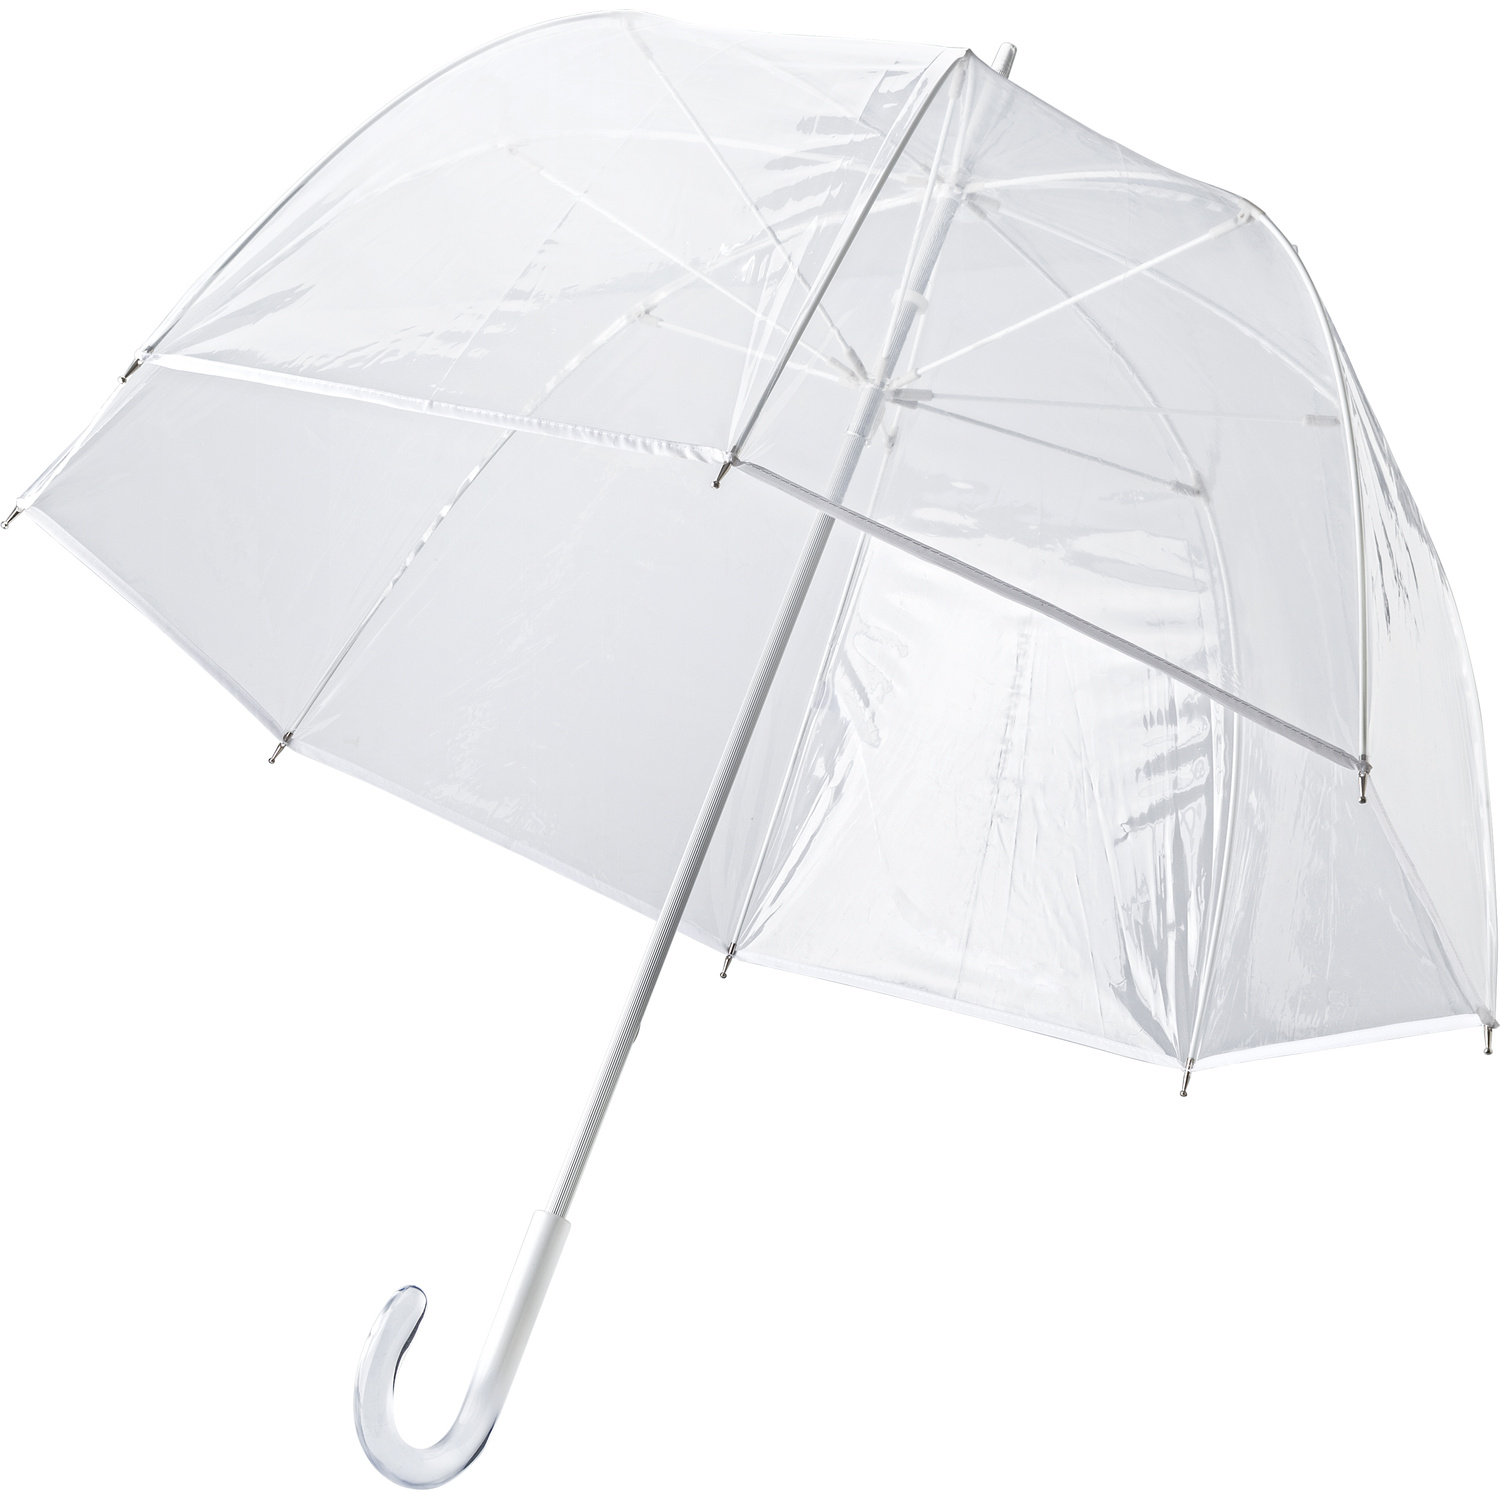 007962 002999999 3d045 ins pro01 fal - PVC umbrella